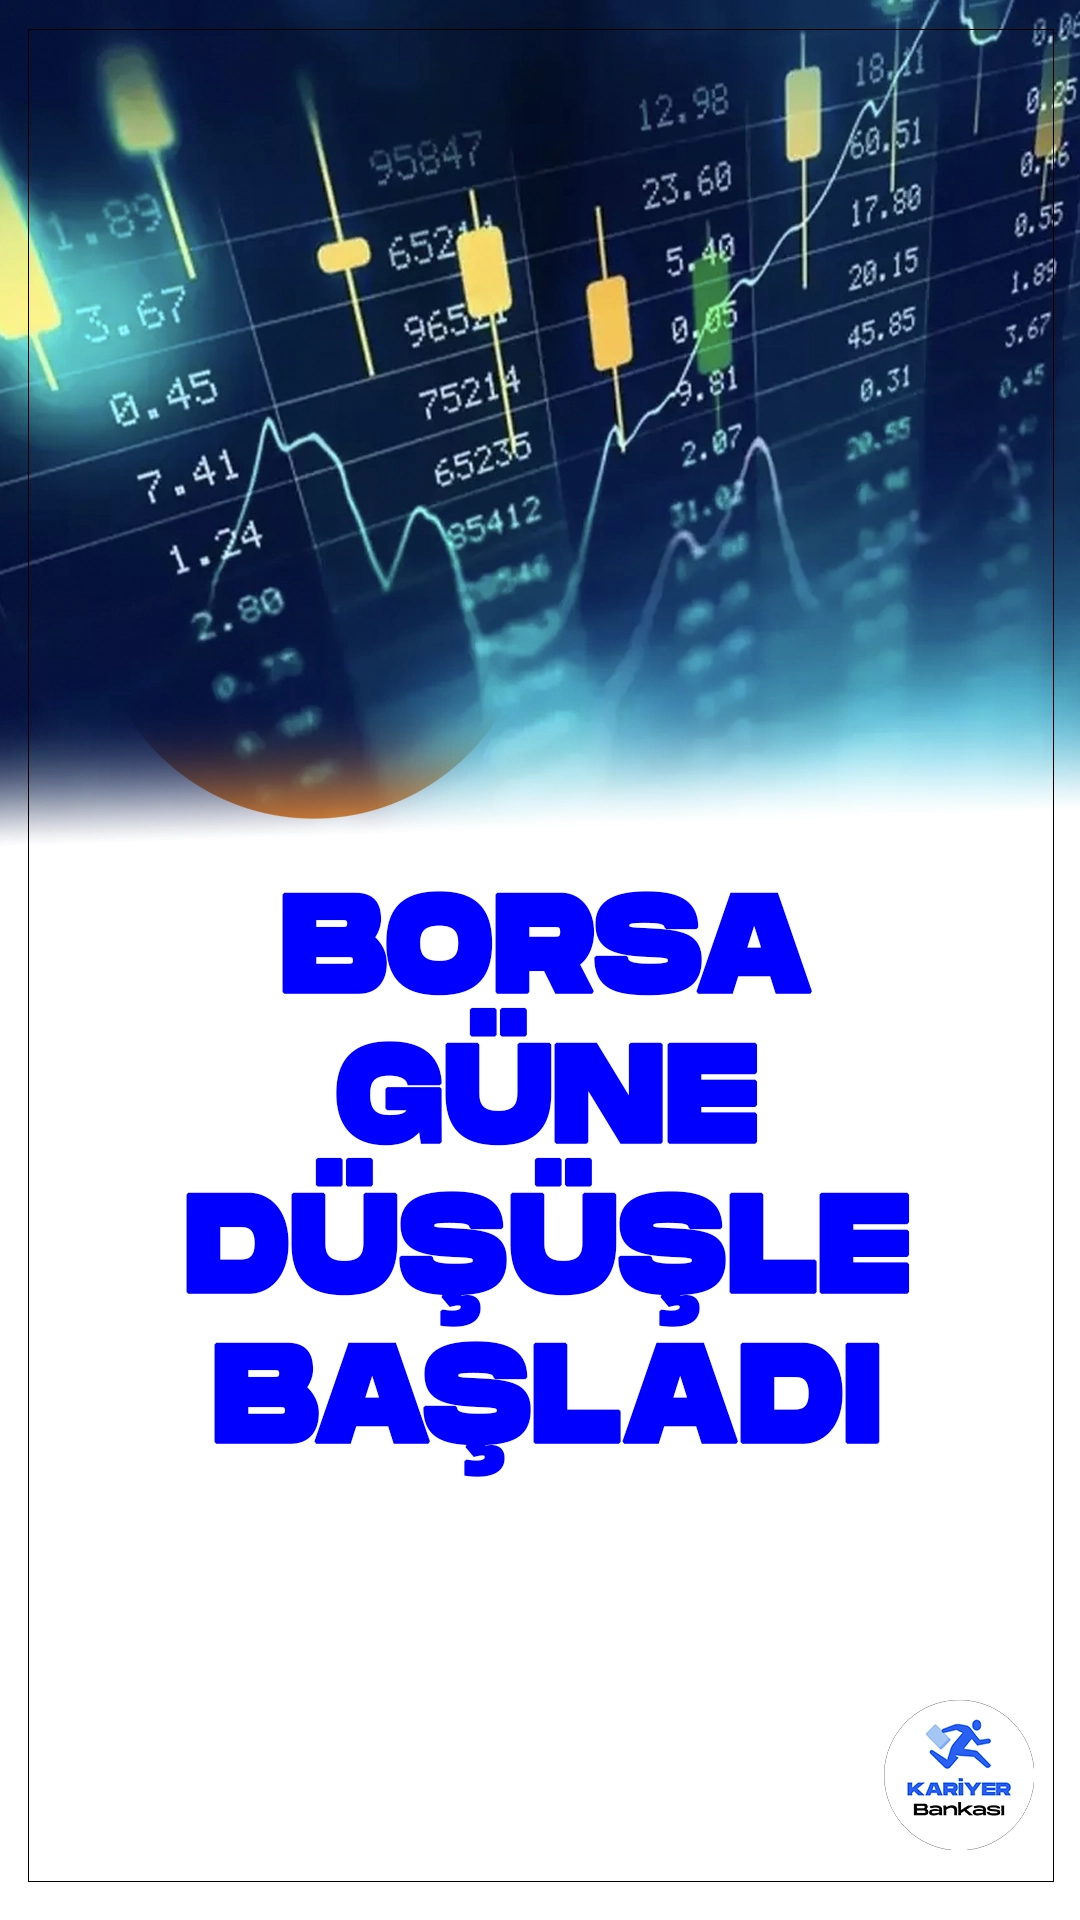 Borsa İstanbul'da Güne Düşüşle Başlangıç.Borsa İstanbul'da işlem gören BIST 100 endeksi, güne %0,98'lik bir düşüşle başladı. Açılışta endeks, önceki kapanışa göre 93,42 puanlık bir değer kaybı yaşayarak 9.431,16 puana geriledi.